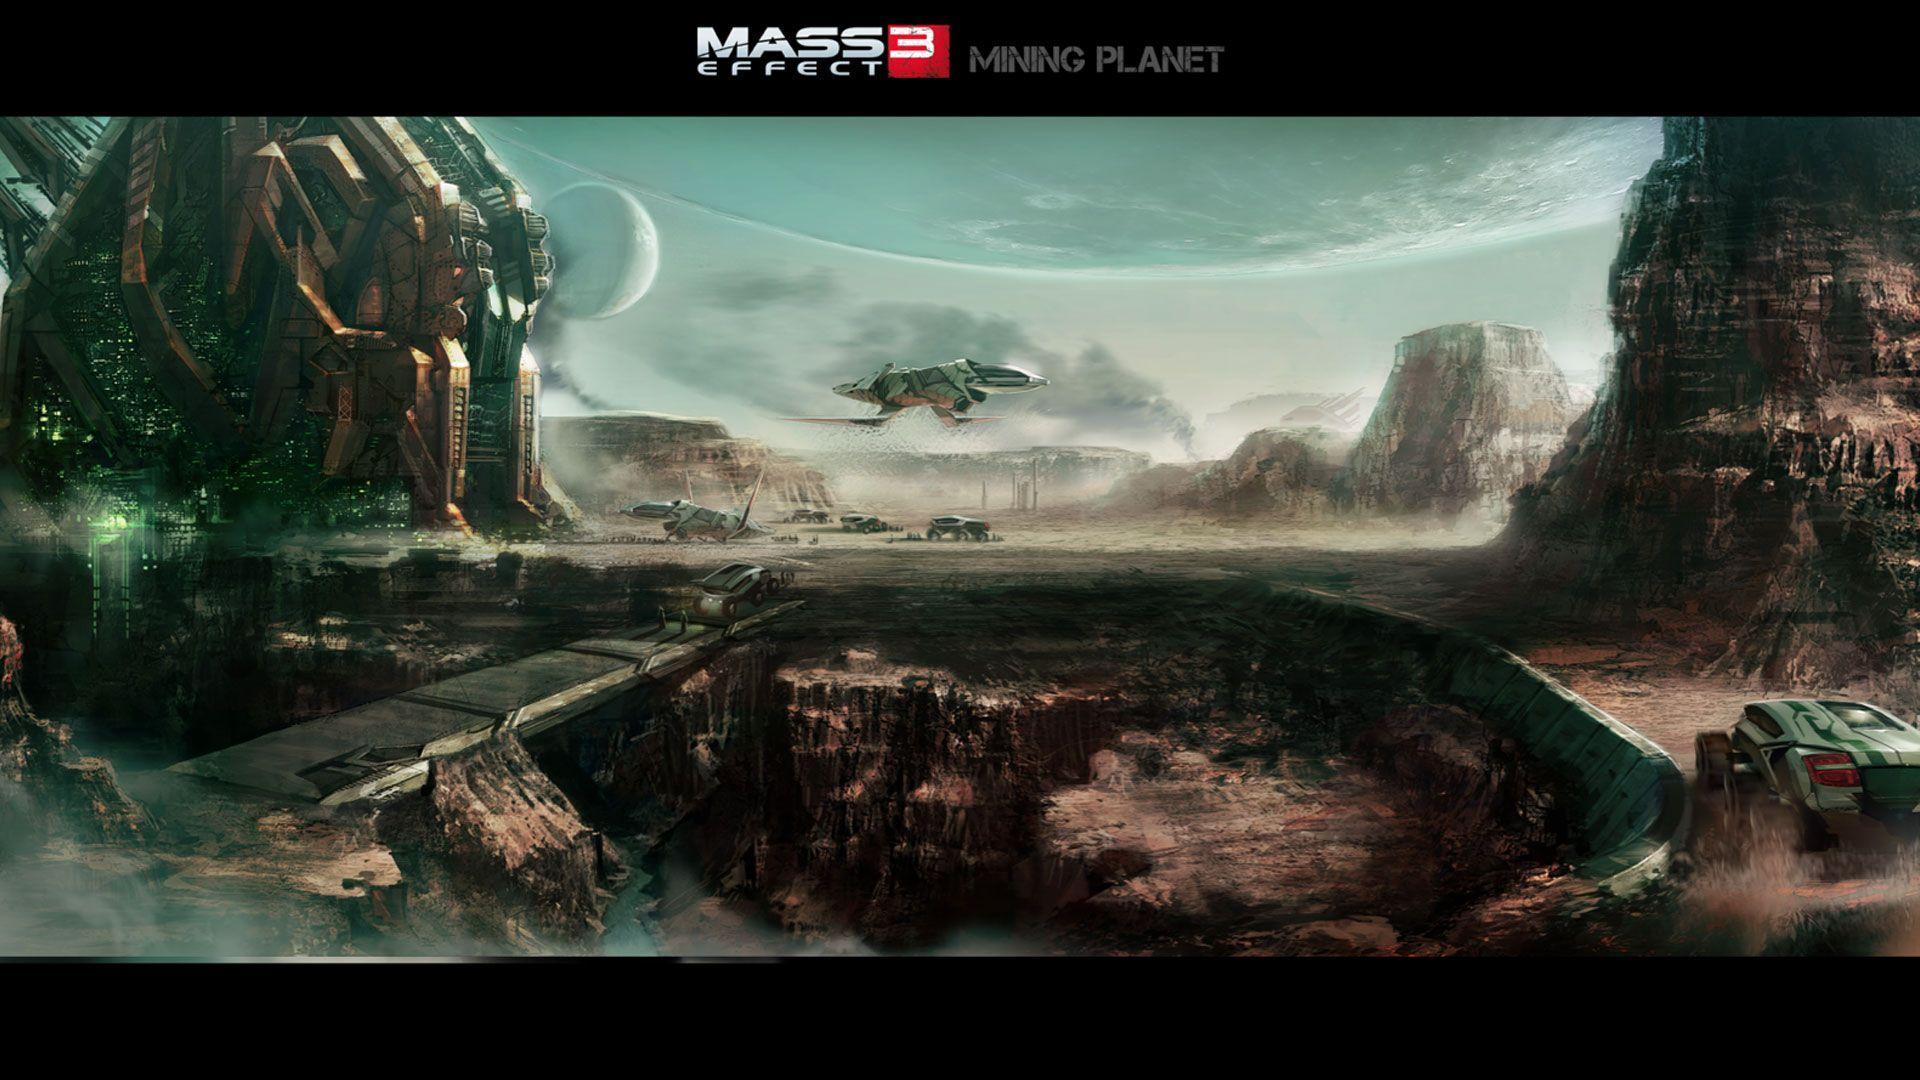 Mass Effect 3 Wallpaper 1080p. Best Free Wallpaper